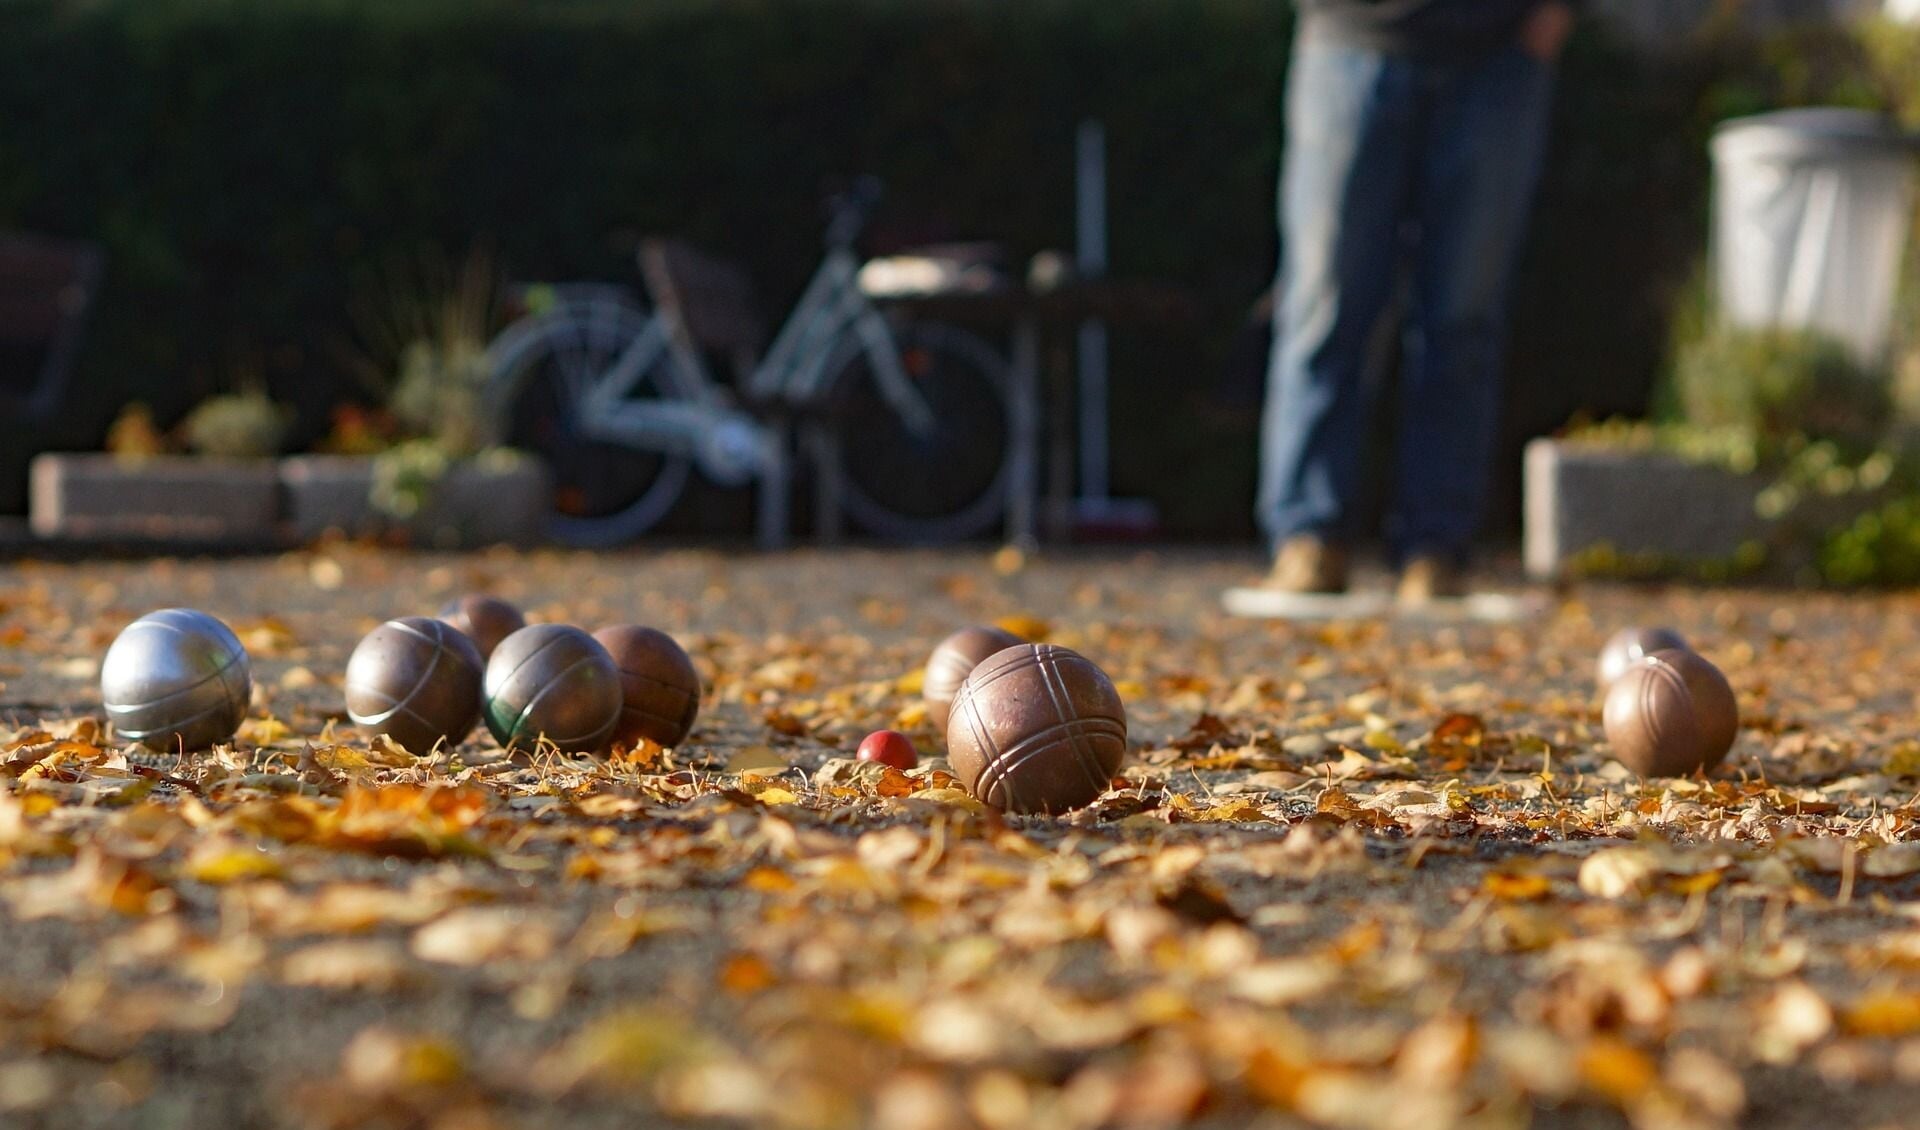 Petanque of in de volksmond jeu de boules kan het hele jaar door gespeeld worden 